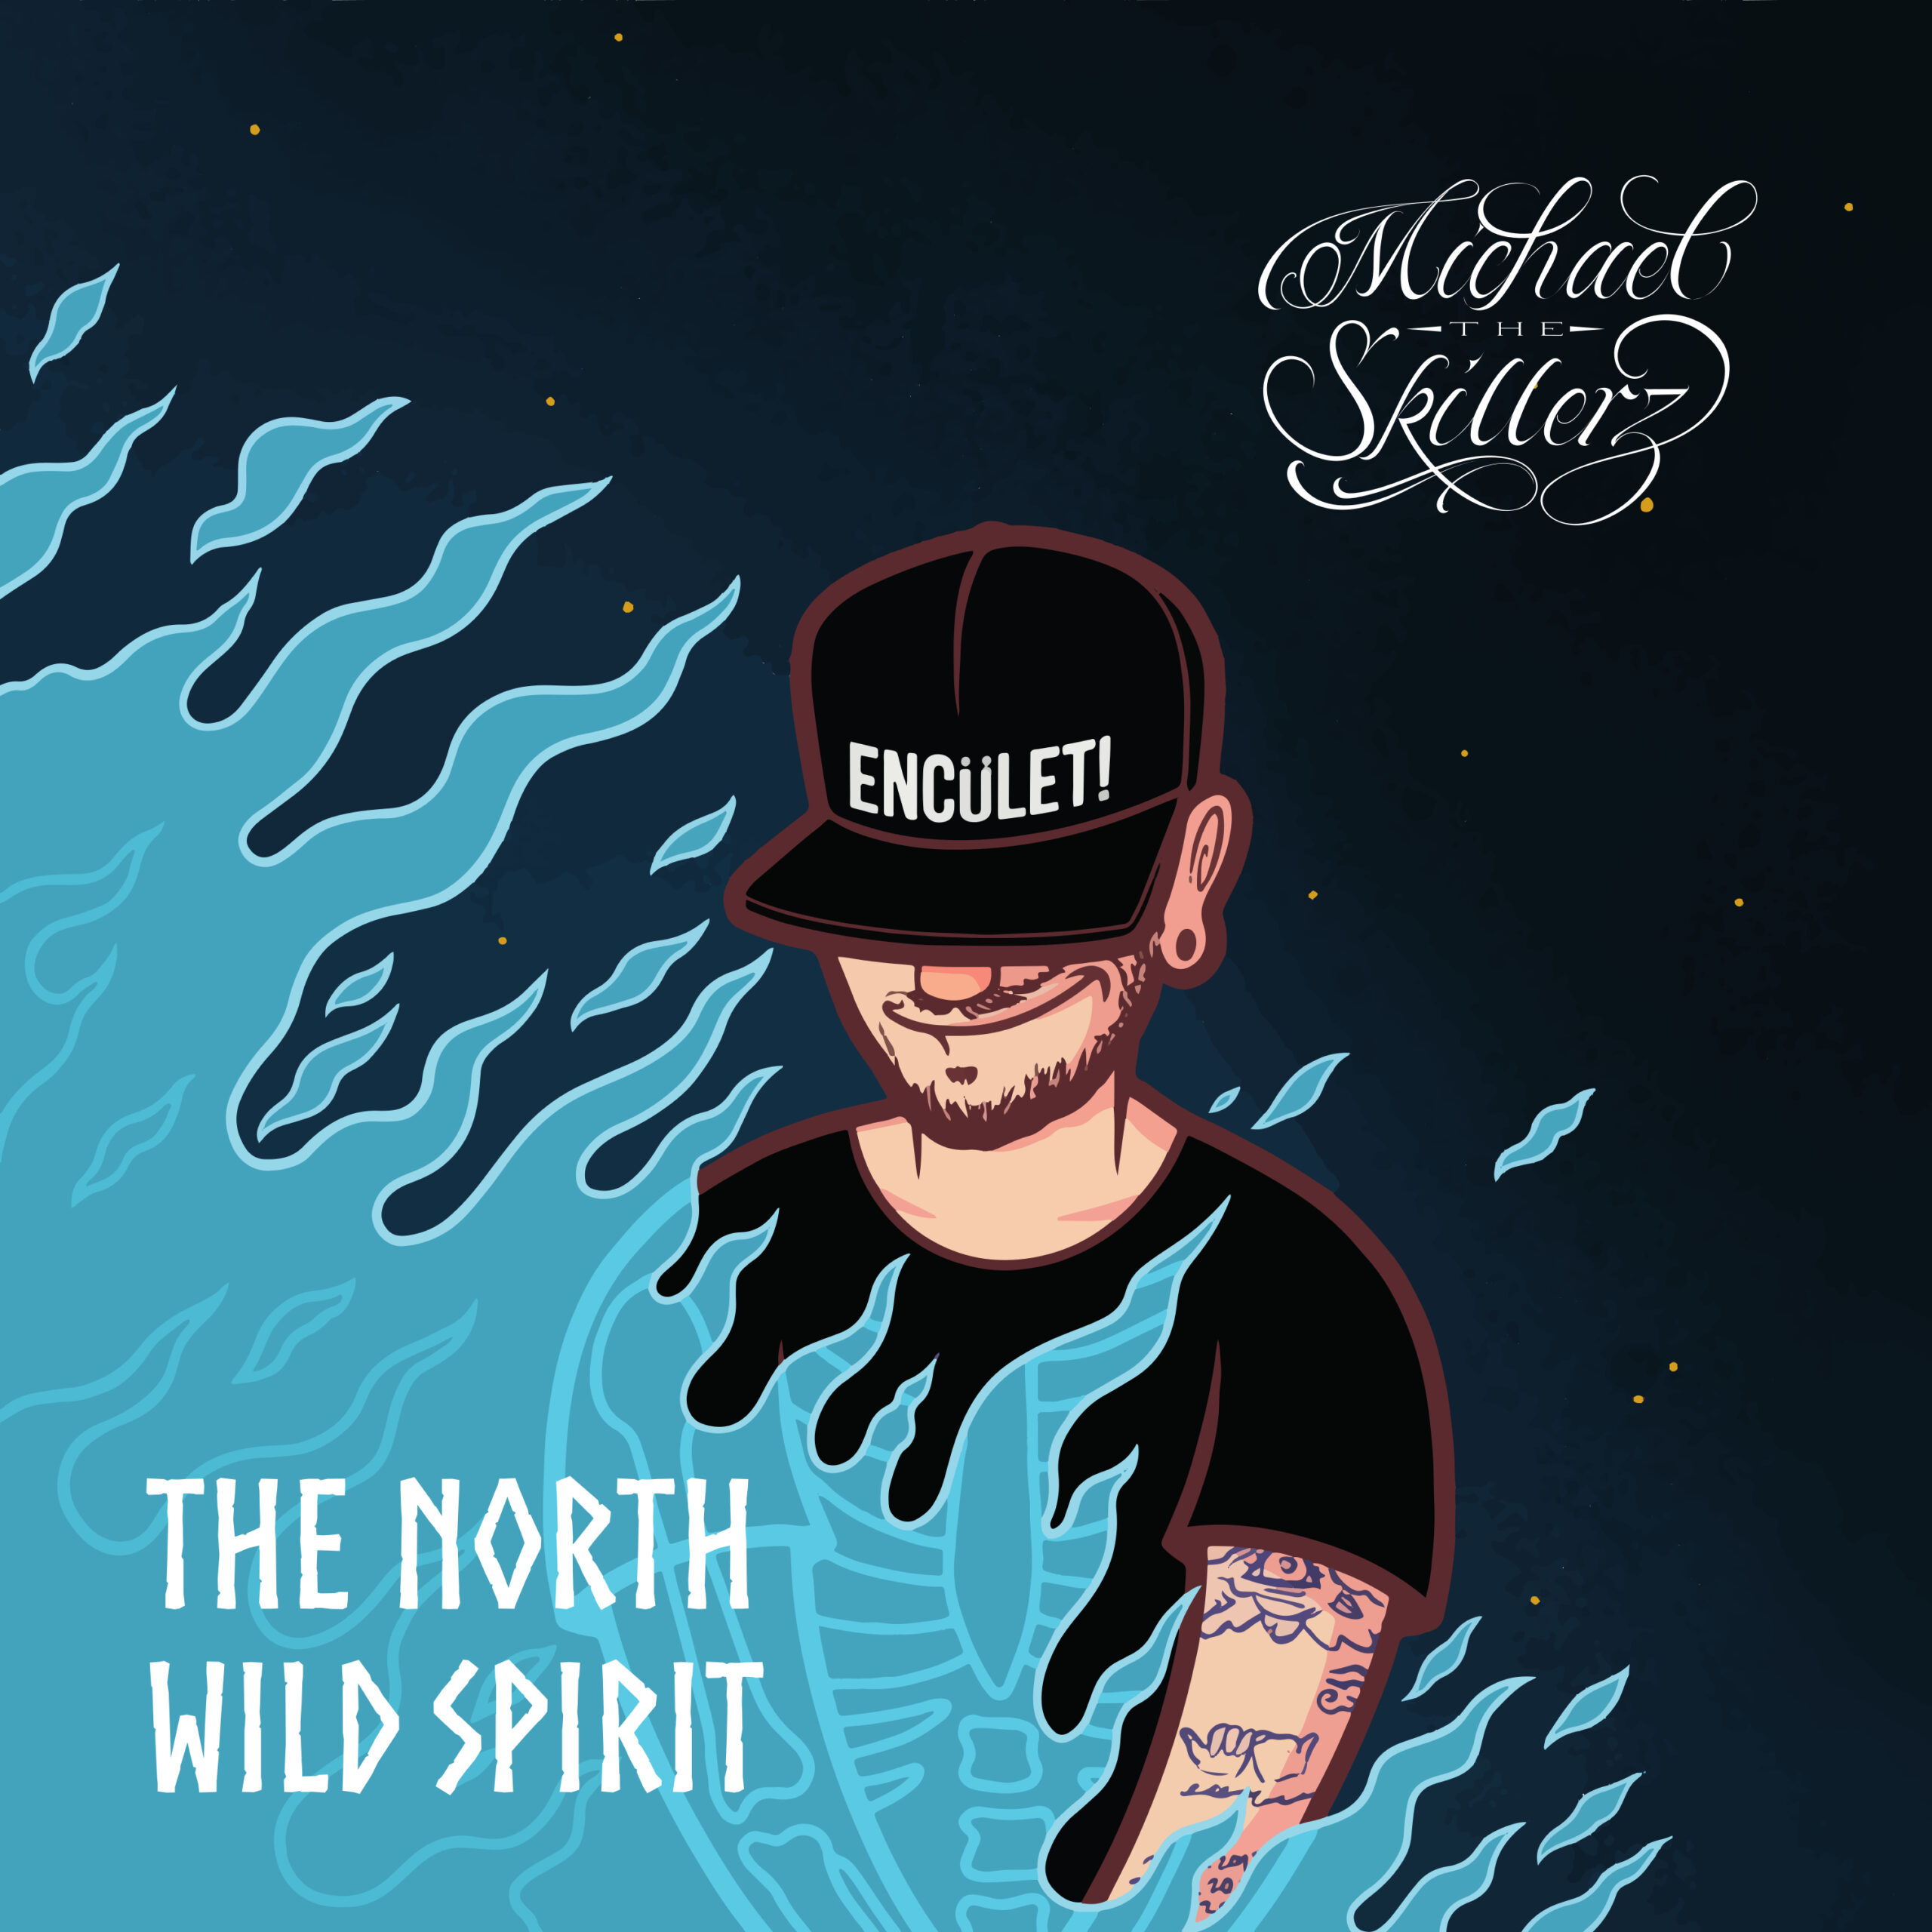 Al momento stai visualizzando “The North Wild Spirit” è il primo album di Michael The Skillerz